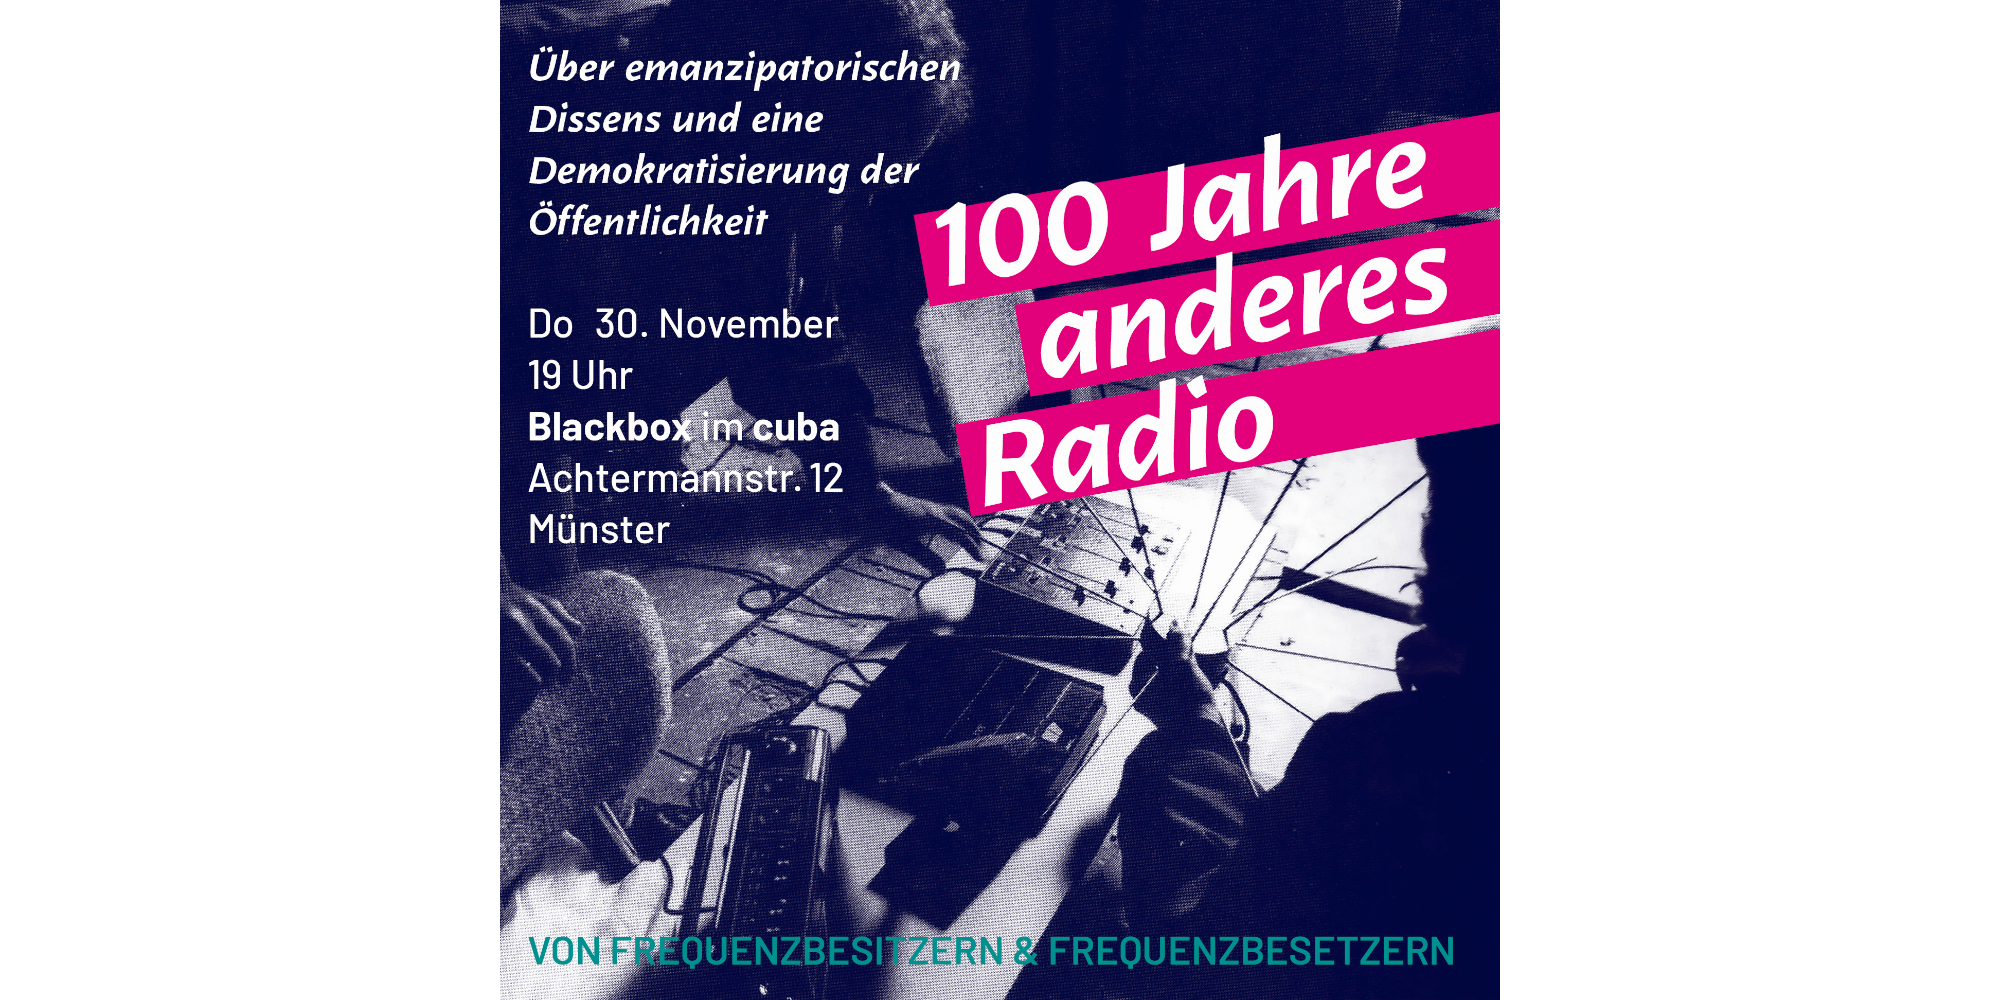 Grafik zur Veranstaltung "100 Jahre anderes Radio"